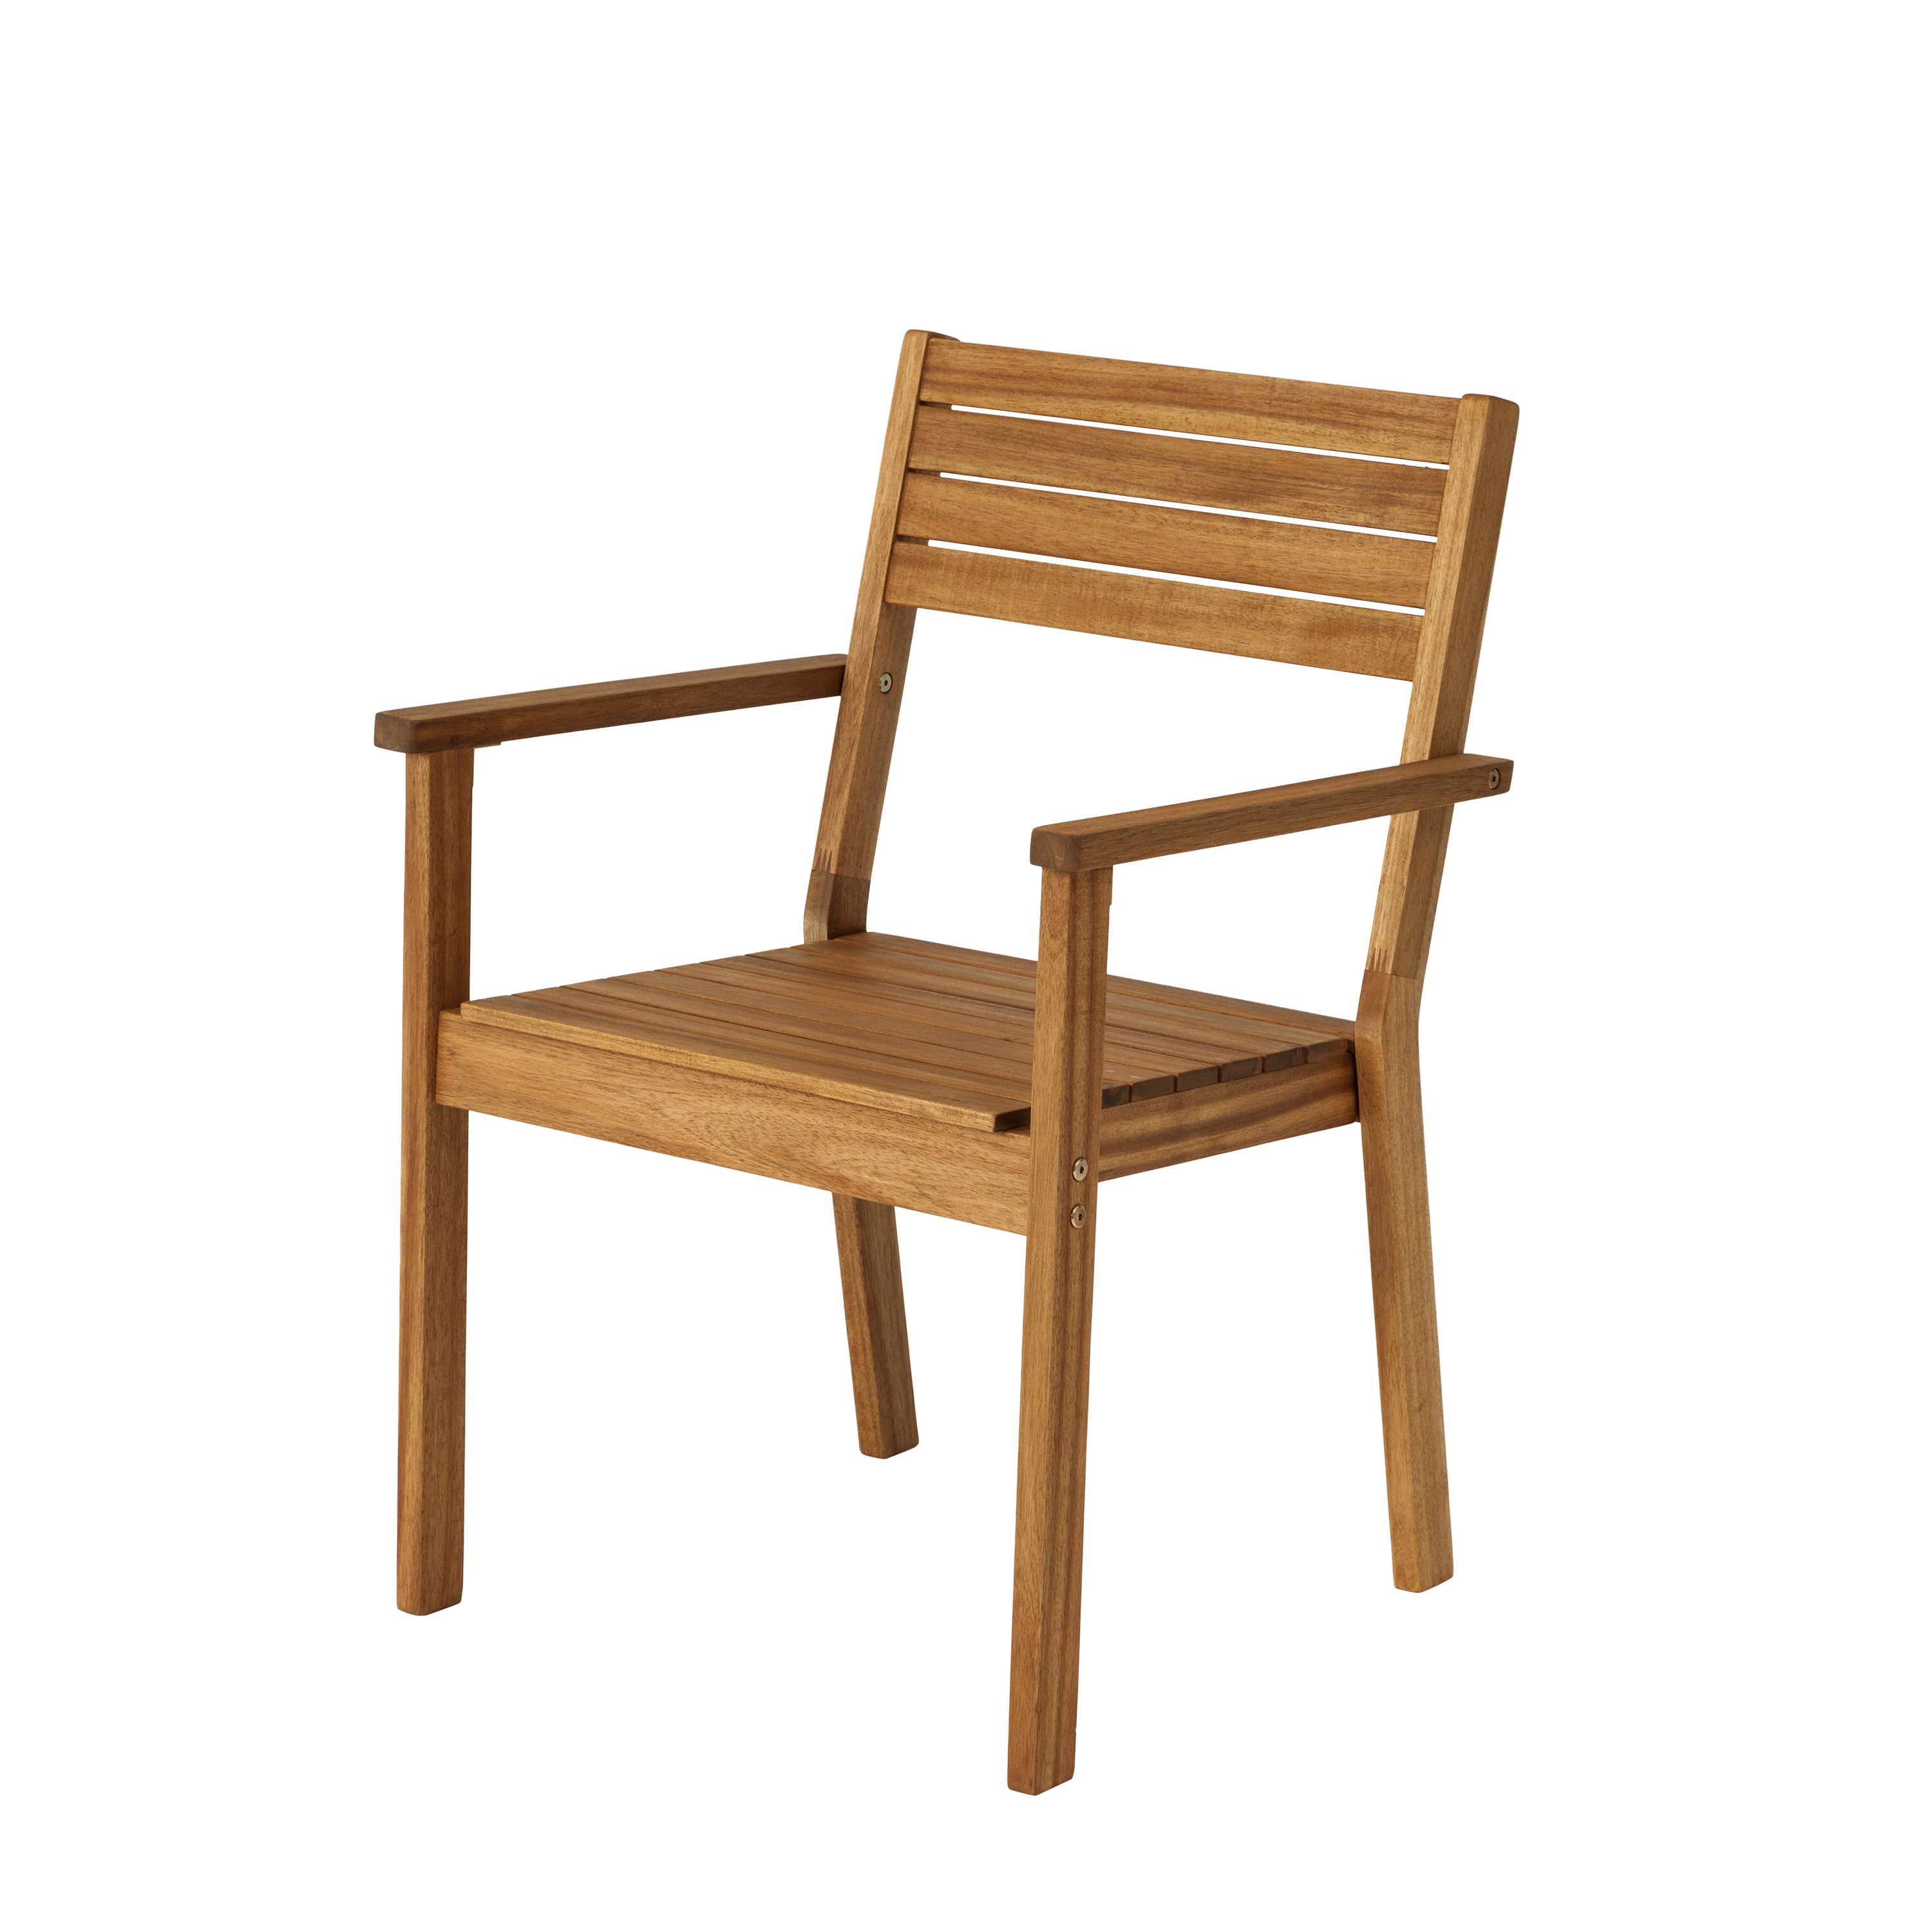 Леруа складные стулья. Стул складной «Порто», Акация. Кресло деревянное Leroy Merlin. Леруа Мерлен стулья дерево. Стульчик Леруа Мерлен.